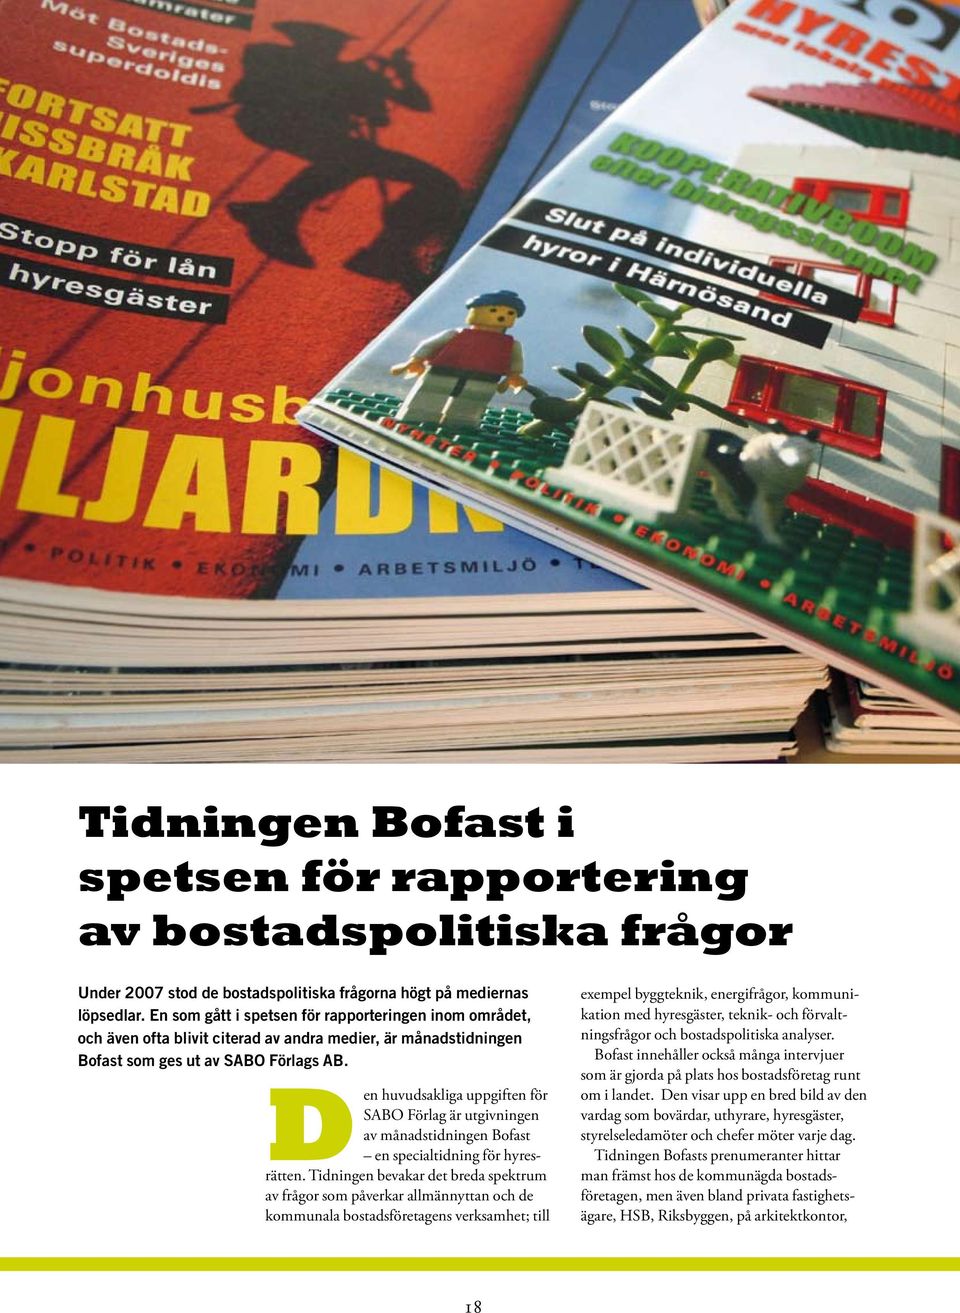 Den huvudsakliga uppgiften för SABO Förlag är utgivningen av månadstidningen Bofast en specialtidning för hyresrätten.